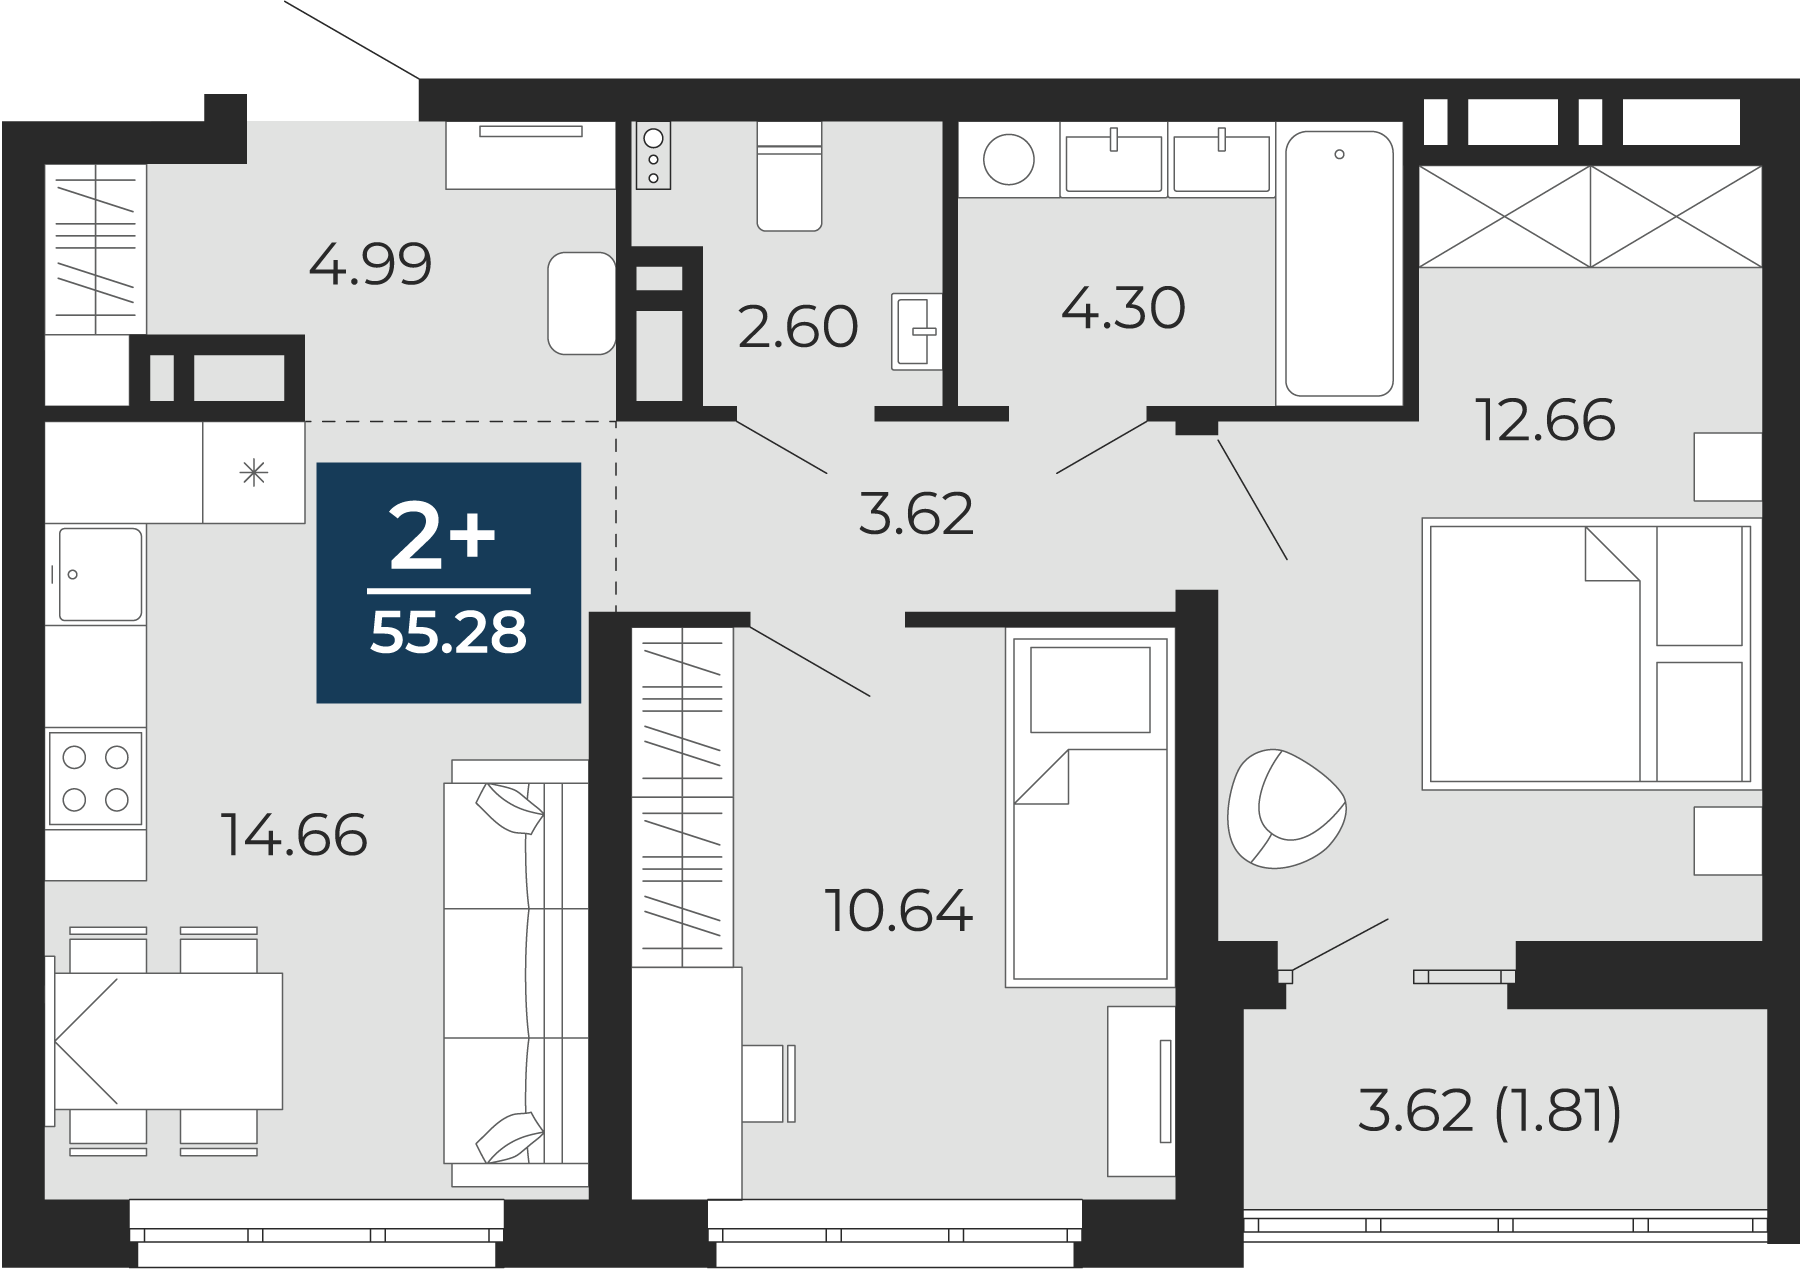 Квартира № 166, 2-комнатная, 55.28 кв. м, 3 этаж